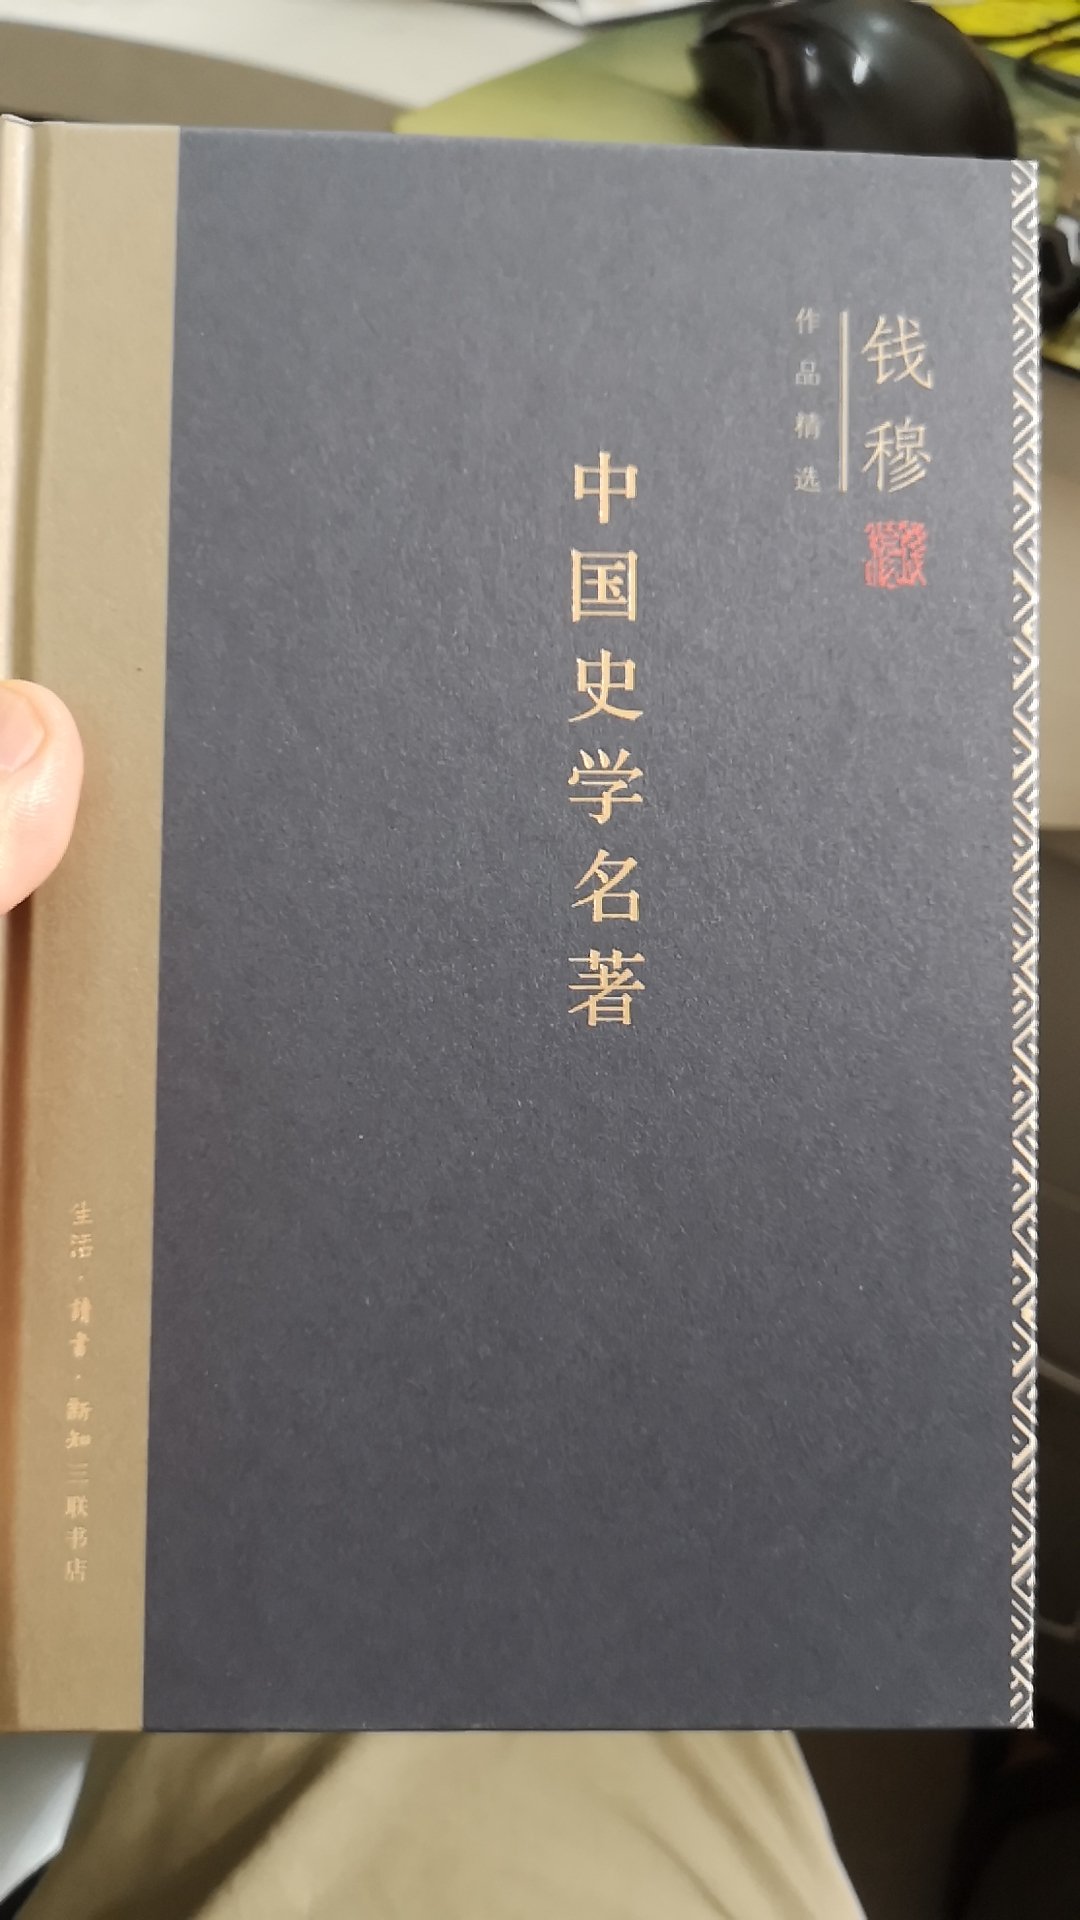 书装帧印刷质量都好，钱穆中国近代史学大师，所著述高屋建翎，读后受益匪浅。